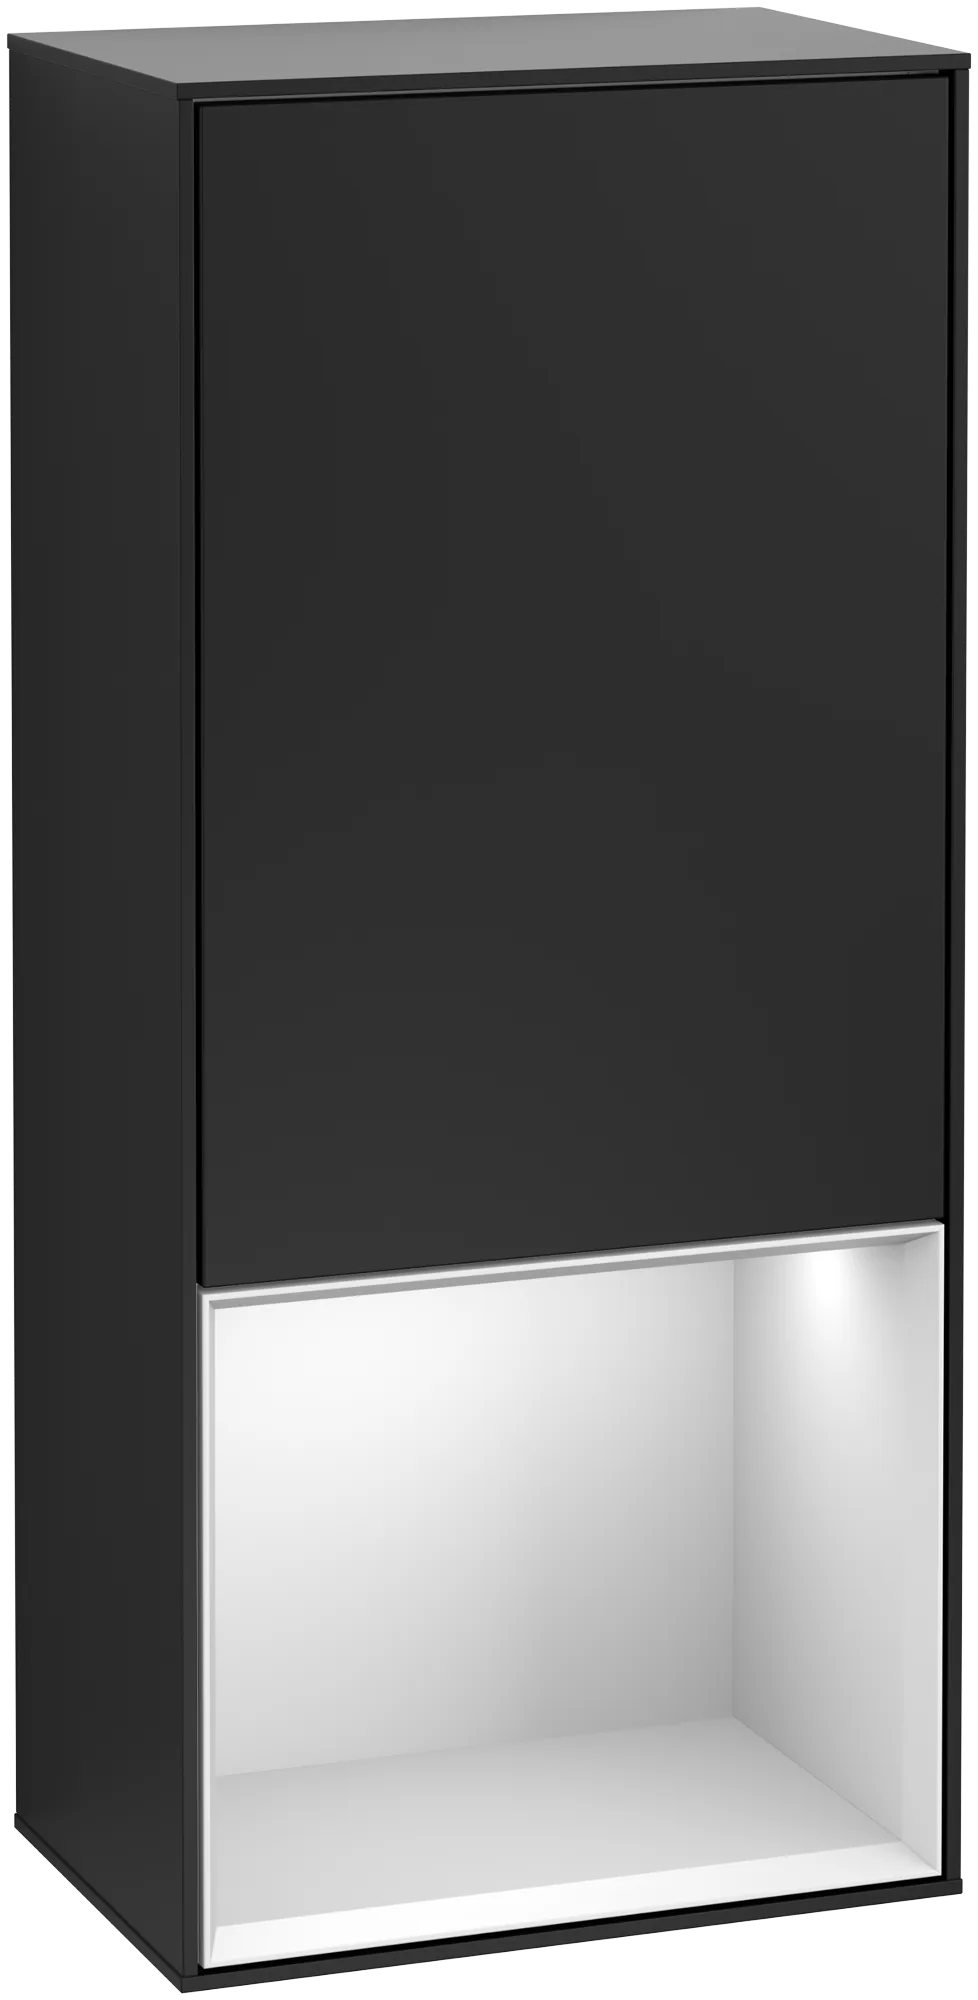 Bild von VILLEROY BOCH Finion Seitenschrank, mit Beleuchtung, 1 Tür, 418 x 936 x 270 mm, Black Matt Lacquer / White Matt Lacquer #G540MTPD